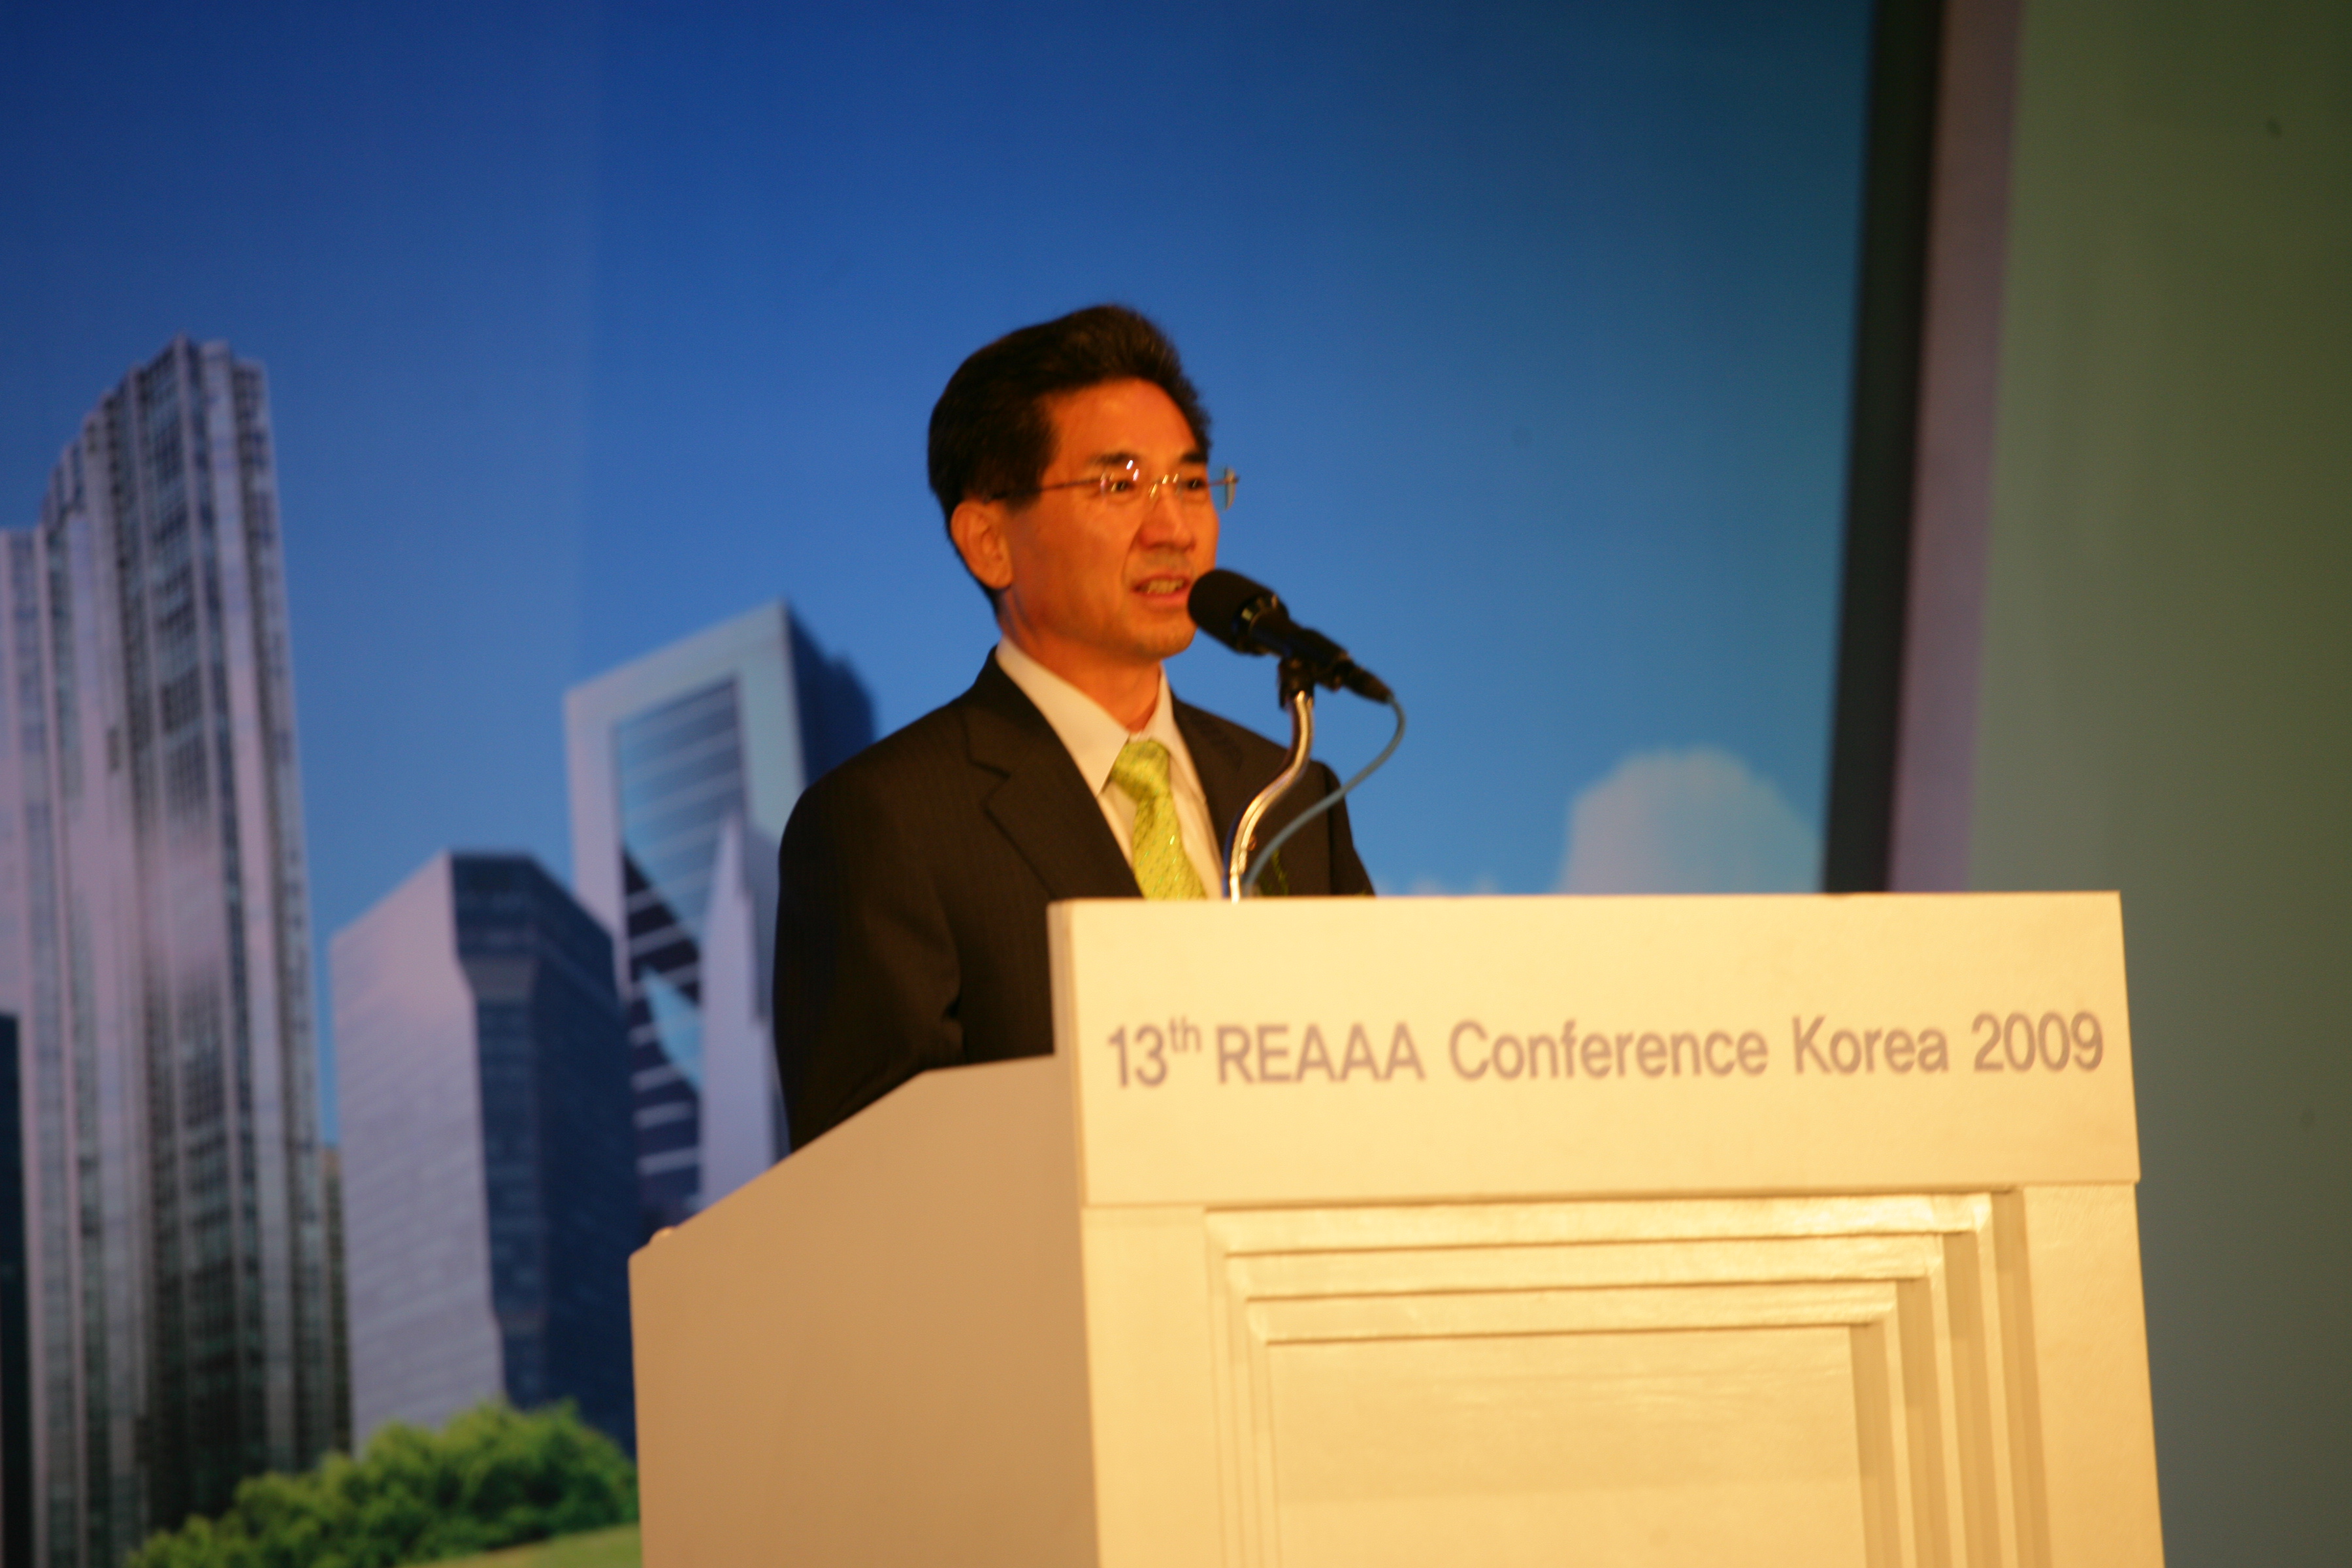 제13차 REAAA(아시아대양주 도로기술협회) 컨퍼런스